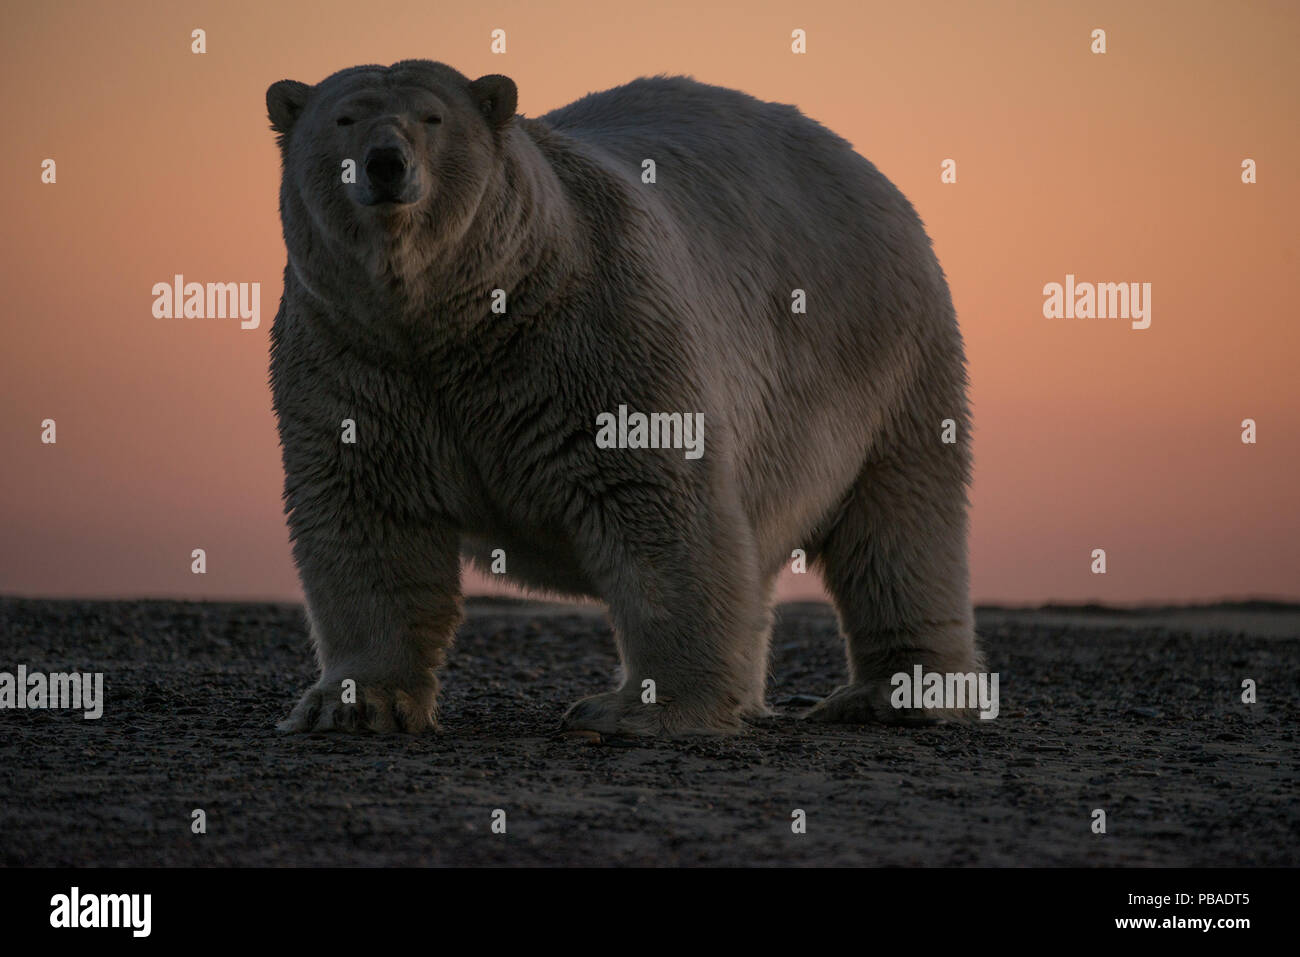 Orso polare (Ursus maritimus) ritratto contro il cielo al tramonto, Bernard allo spiedo, spegnere il 1002 Area, Arctic National Wildlife Refuge, versante Nord, Alaska, STATI UNITI D'AMERICA, Settembre. Le specie vulnerabili. Foto Stock